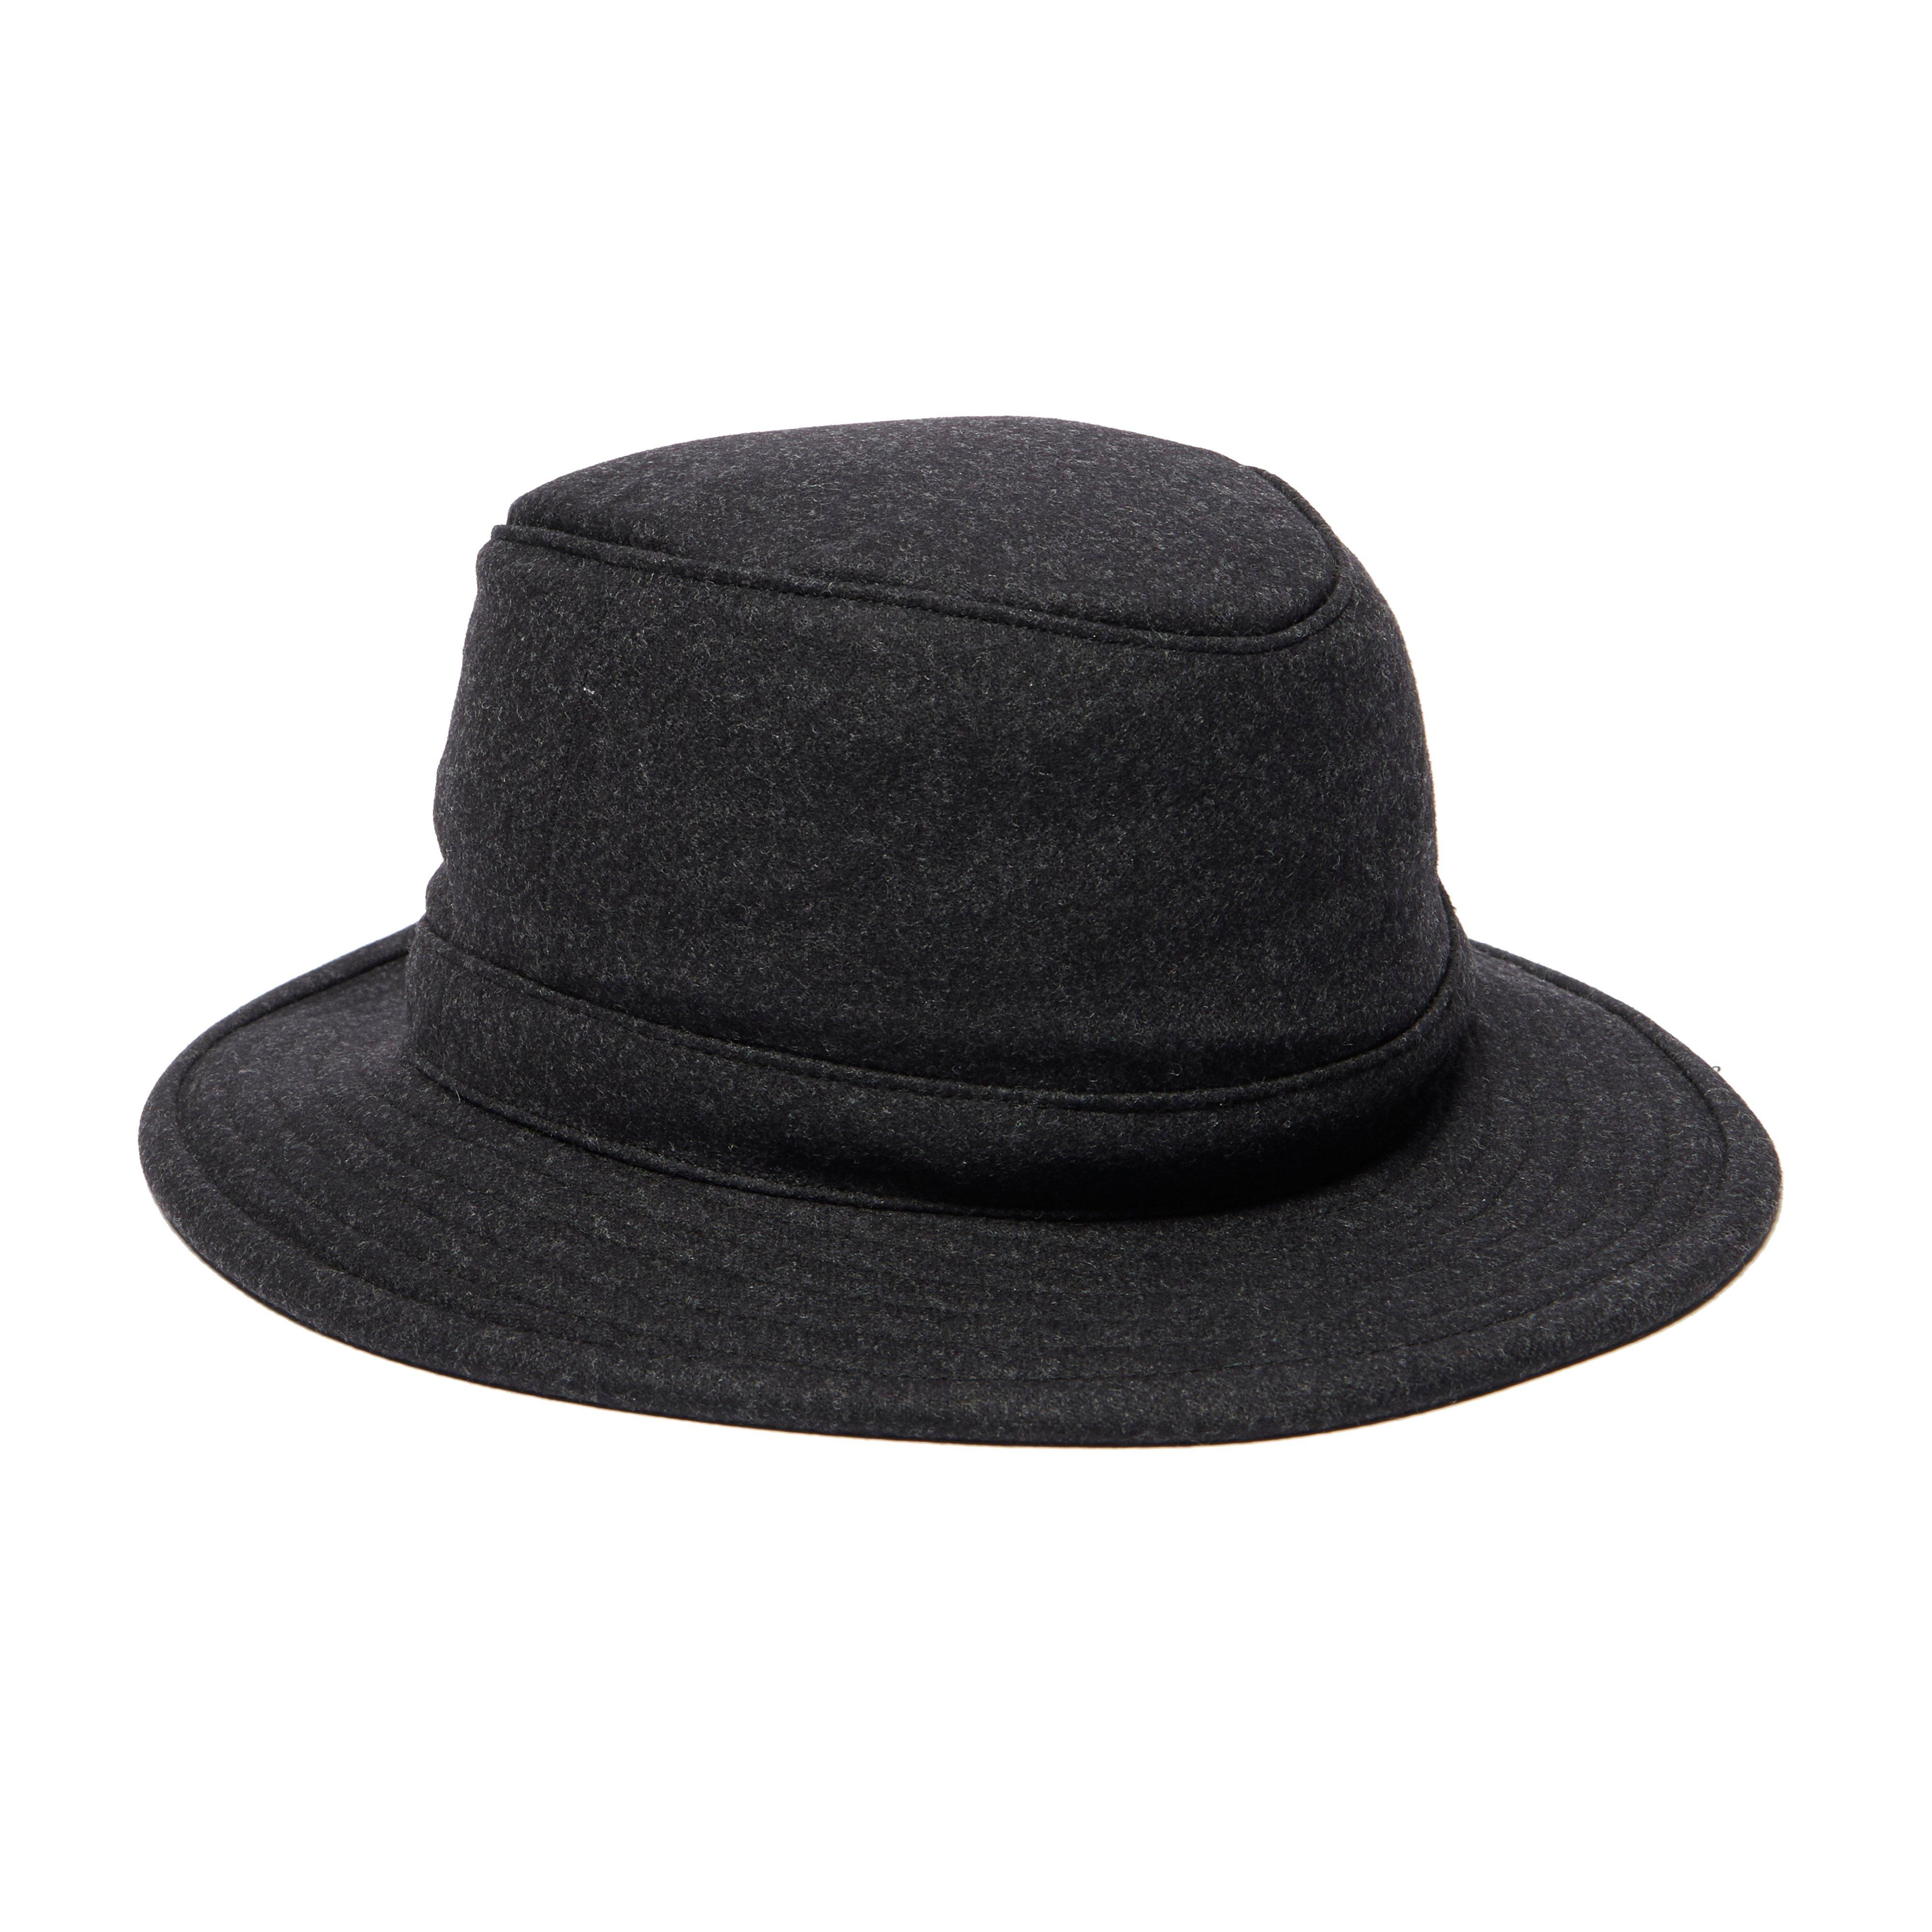 Tilley Men's TTW2 Tec Wool Hat Review